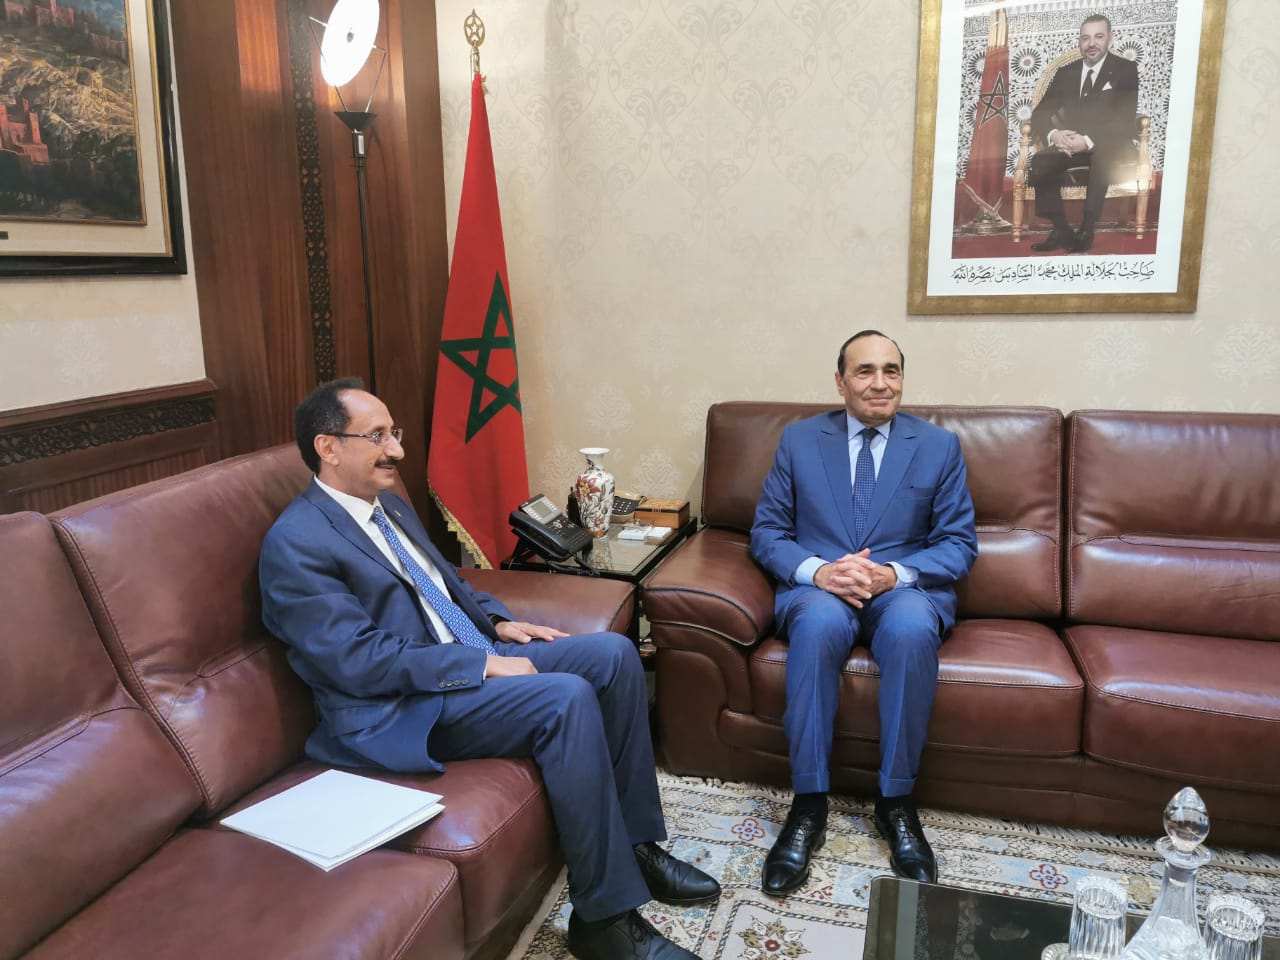 السفير الأصبحي يطلع رئيس البرلمان المغربي على جرائم ميليشيا الحوثي الانقلابية بحق المدنيين